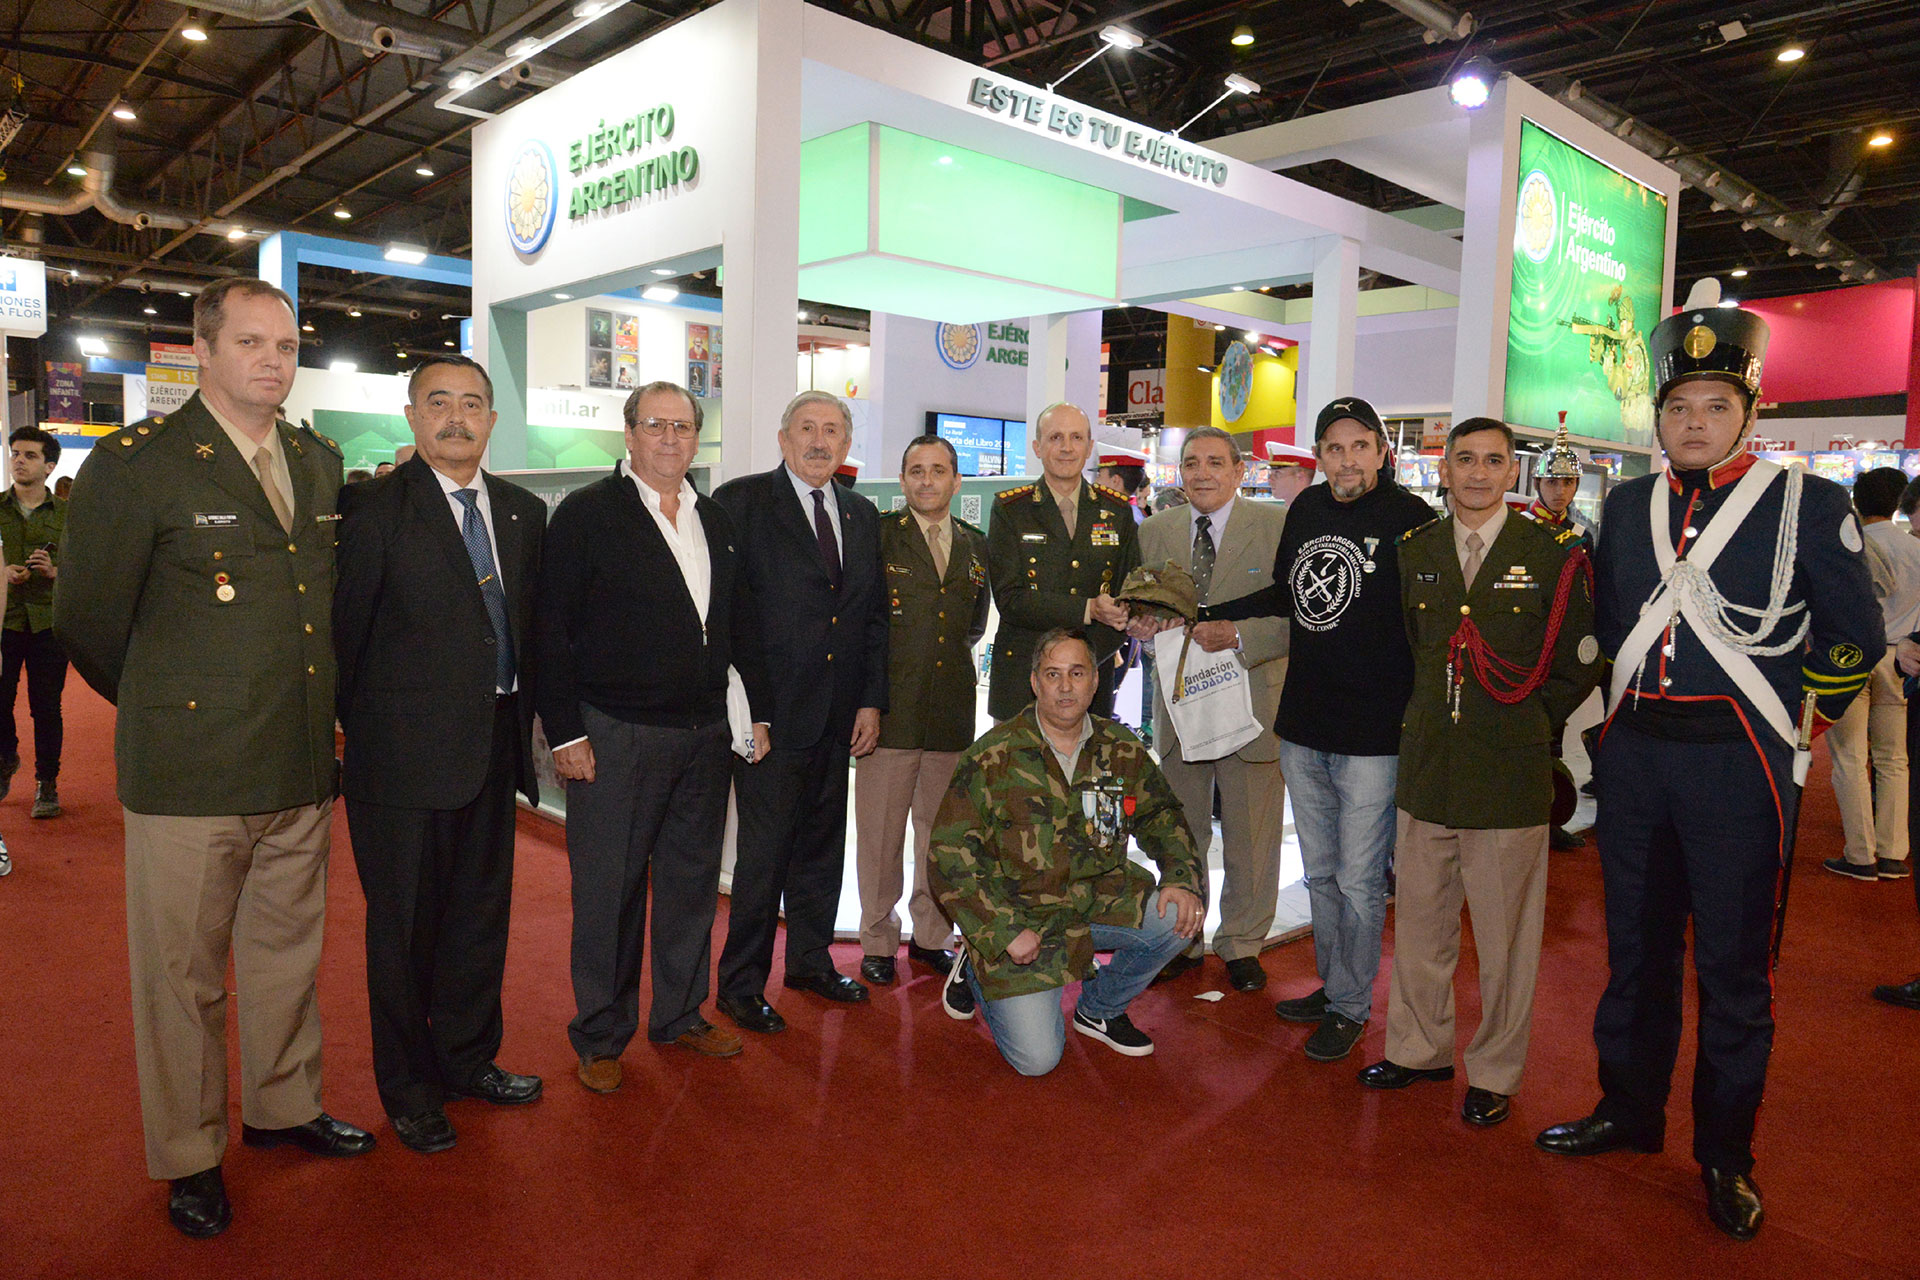 Jorge “Beto” Altieri, agachado, junto al Jefe de Estado Mayor del Ejército, Claudio Pasqualini, en el centro, y un grupo de veteranos del Regimiento 7ª de La Plata